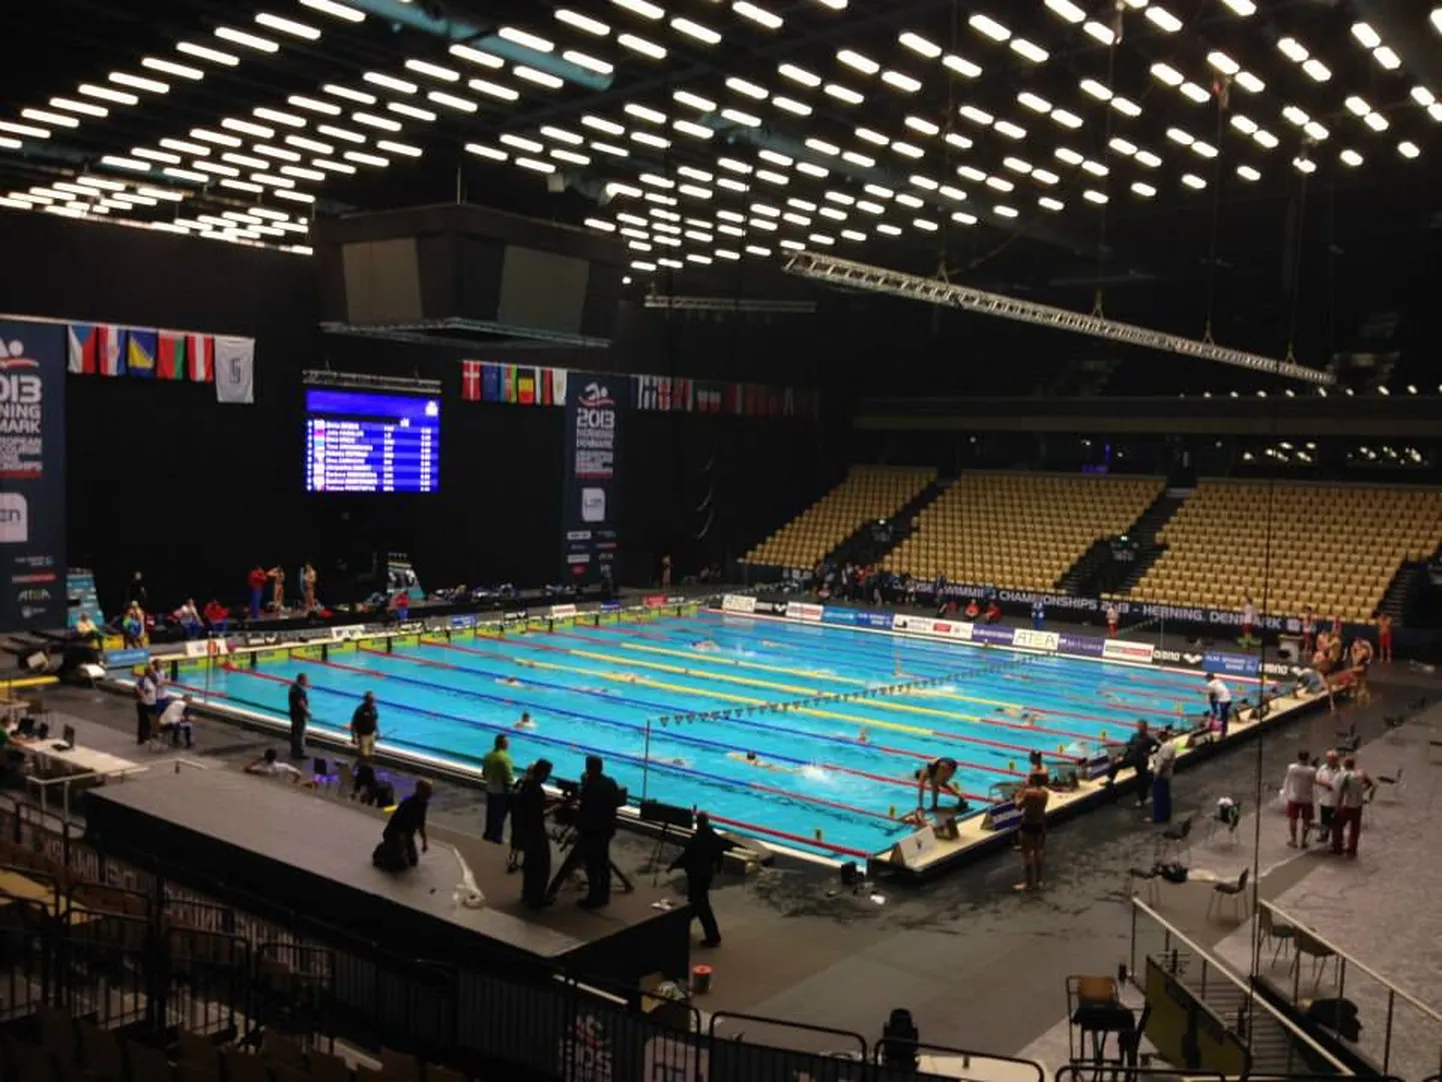 EMi võistlusbassein, kus olid edukad Eesti teatemeeskonna ujujad.